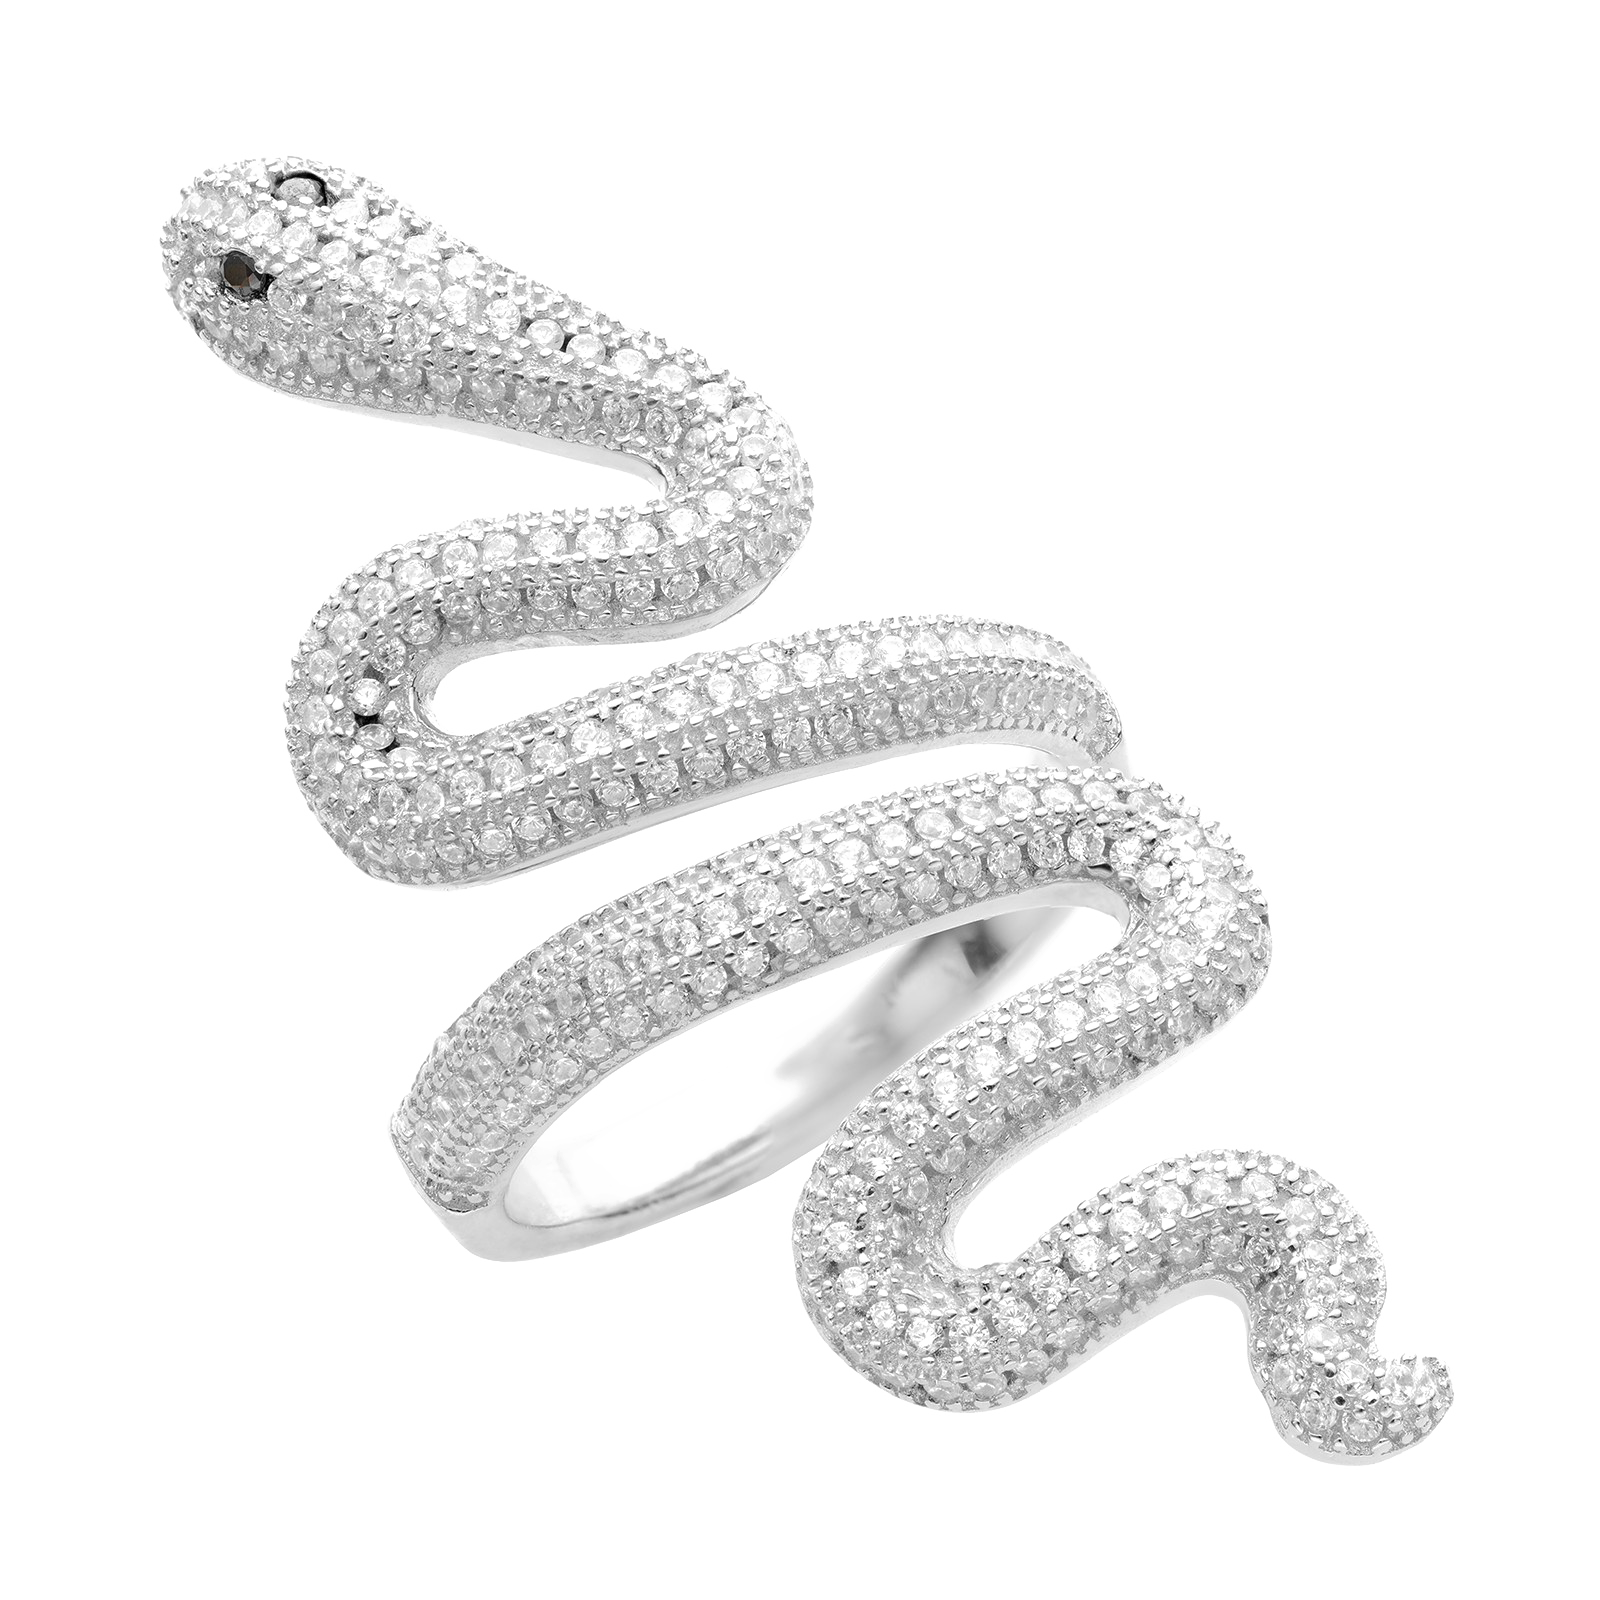 Змея бесплатно PNG Image